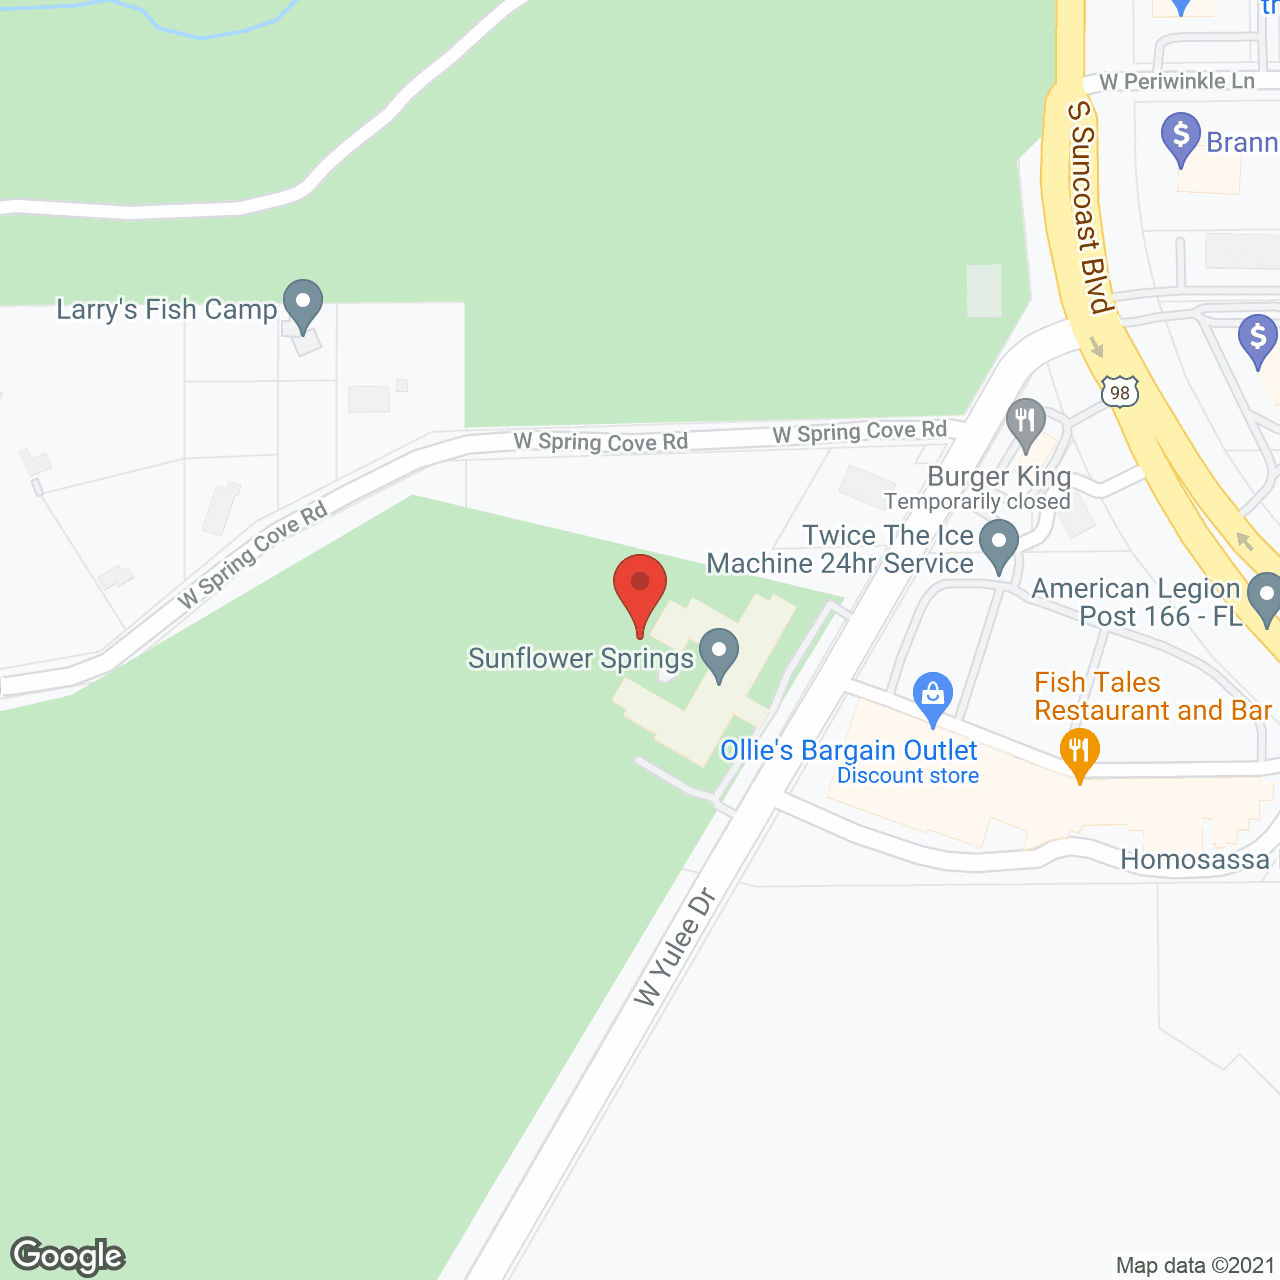 Sunflower Springs LLC in google map